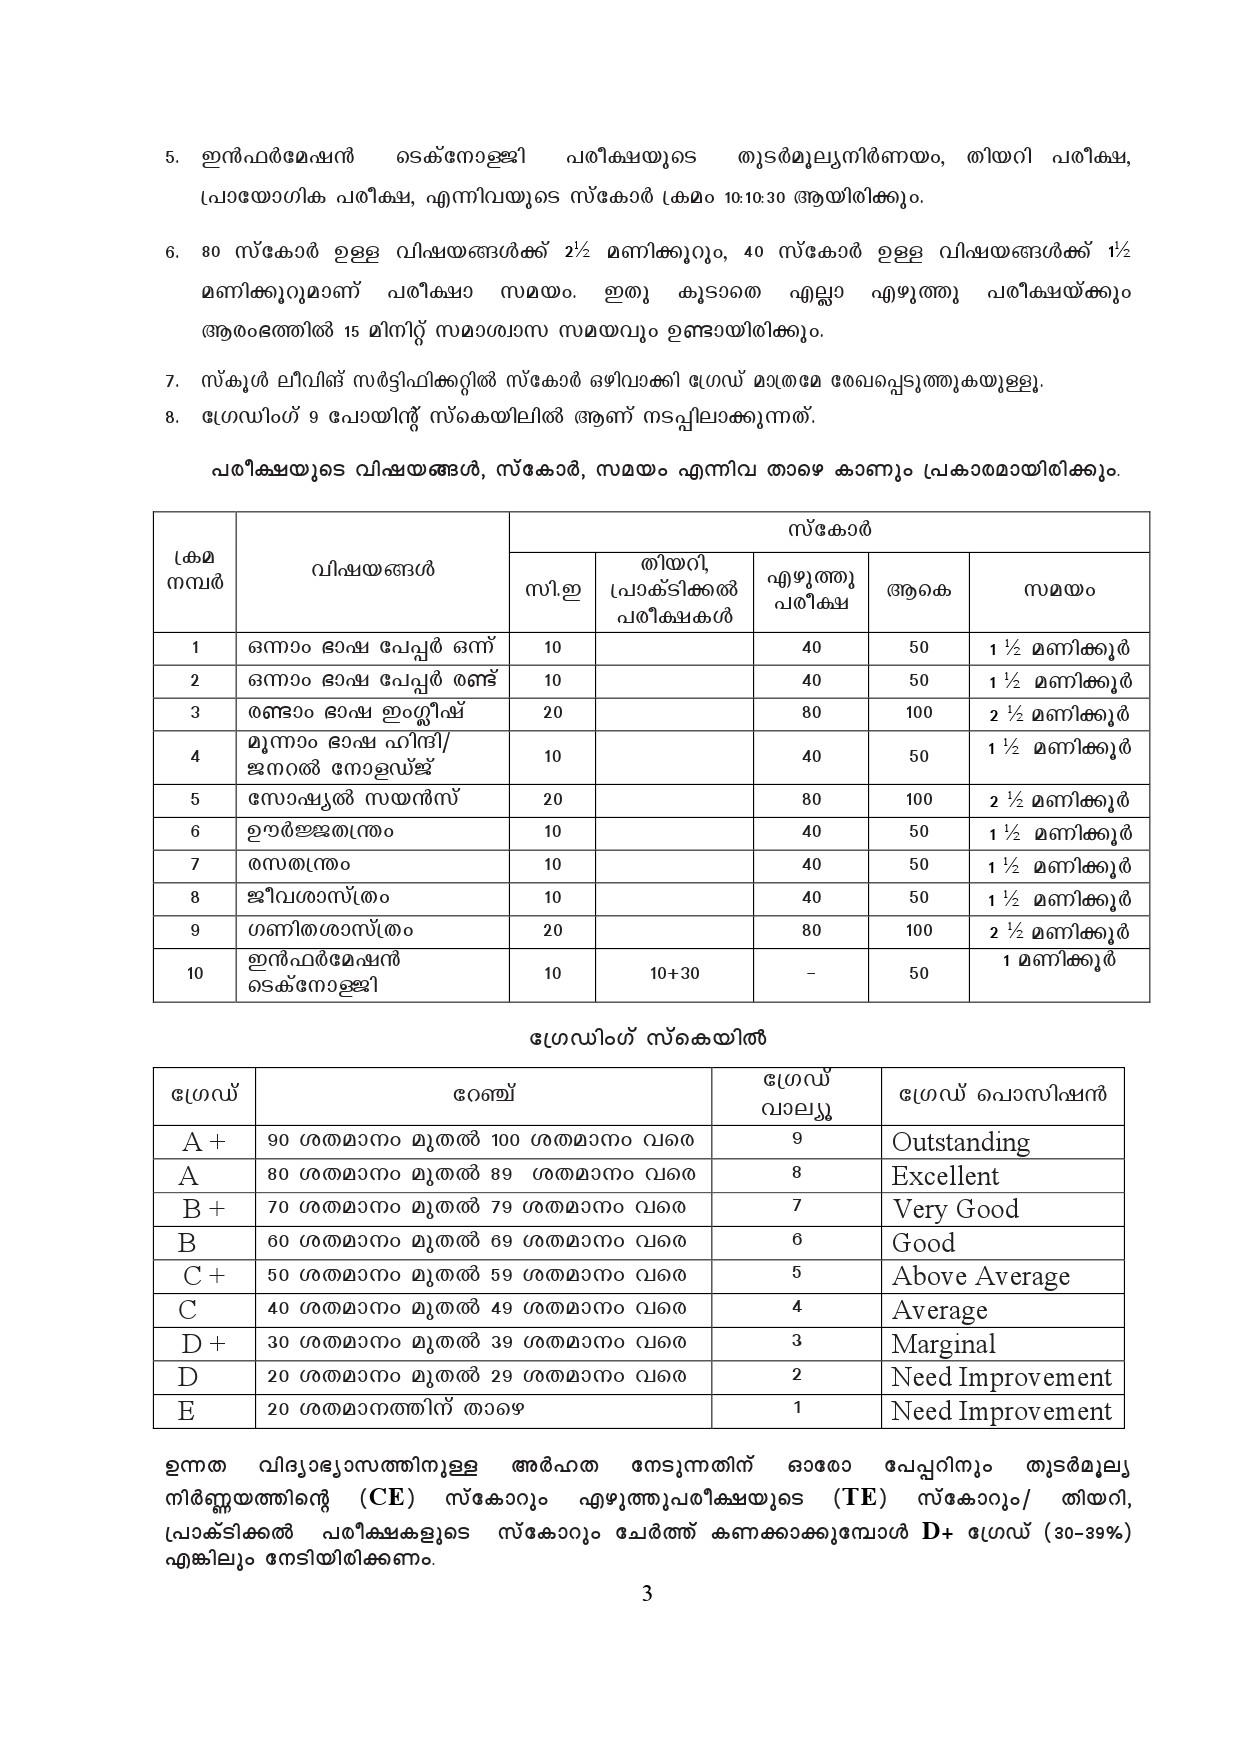 Kerala SSLC Exam Result 2019 - Notification Image 3